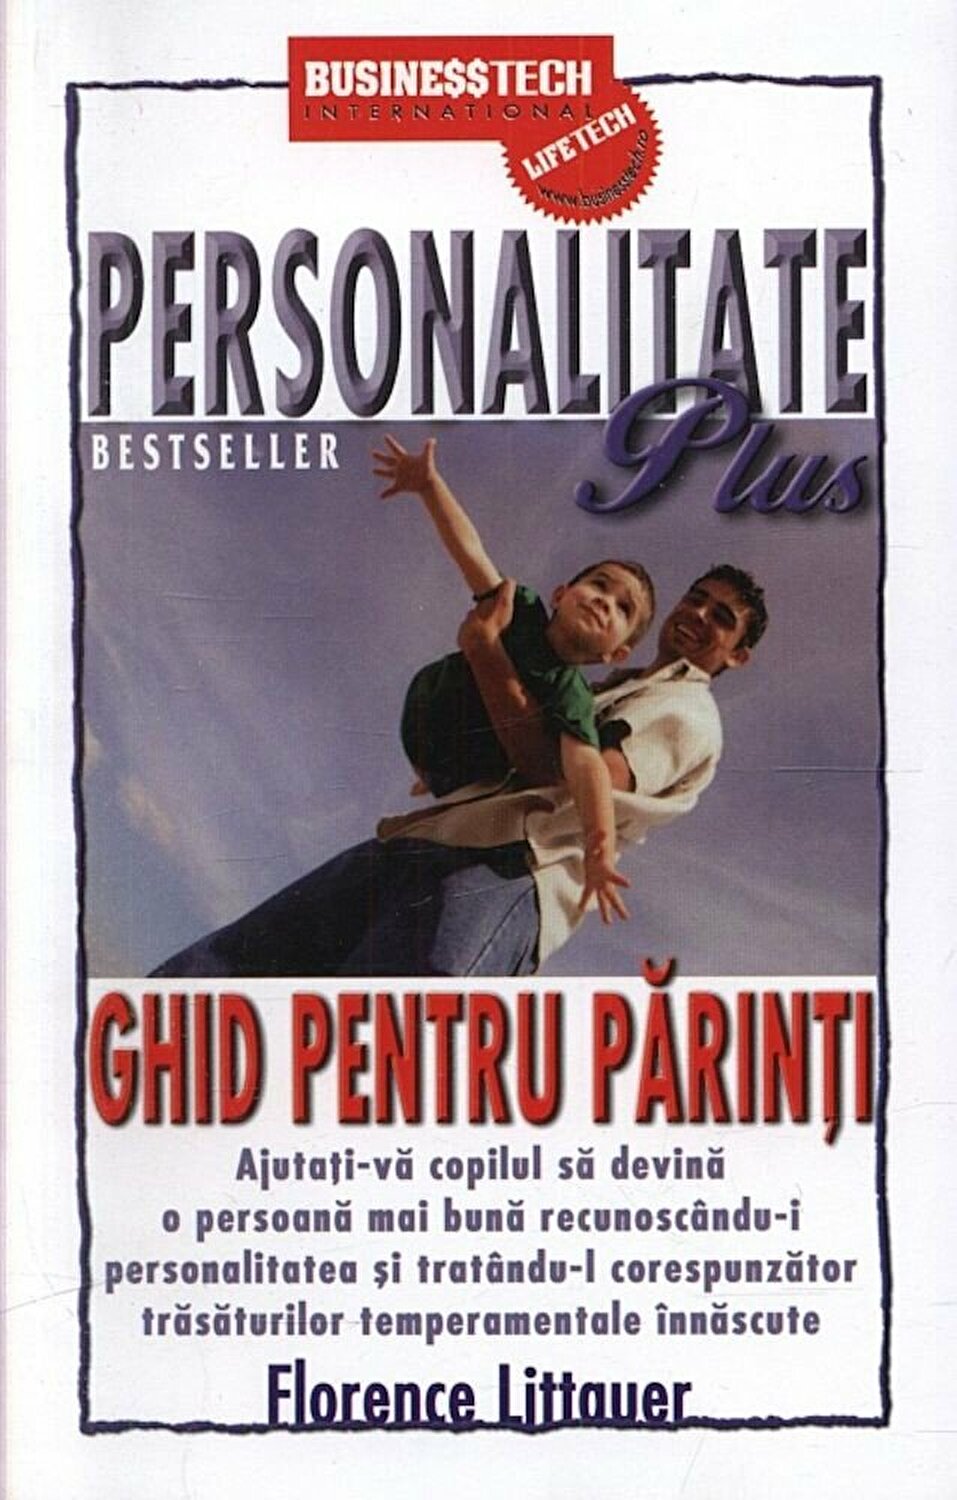 Personalitate Plus – Ghid pentru parinti | Florence Littauer De La Carturesti Carti Dezvoltare Personala 2023-06-04